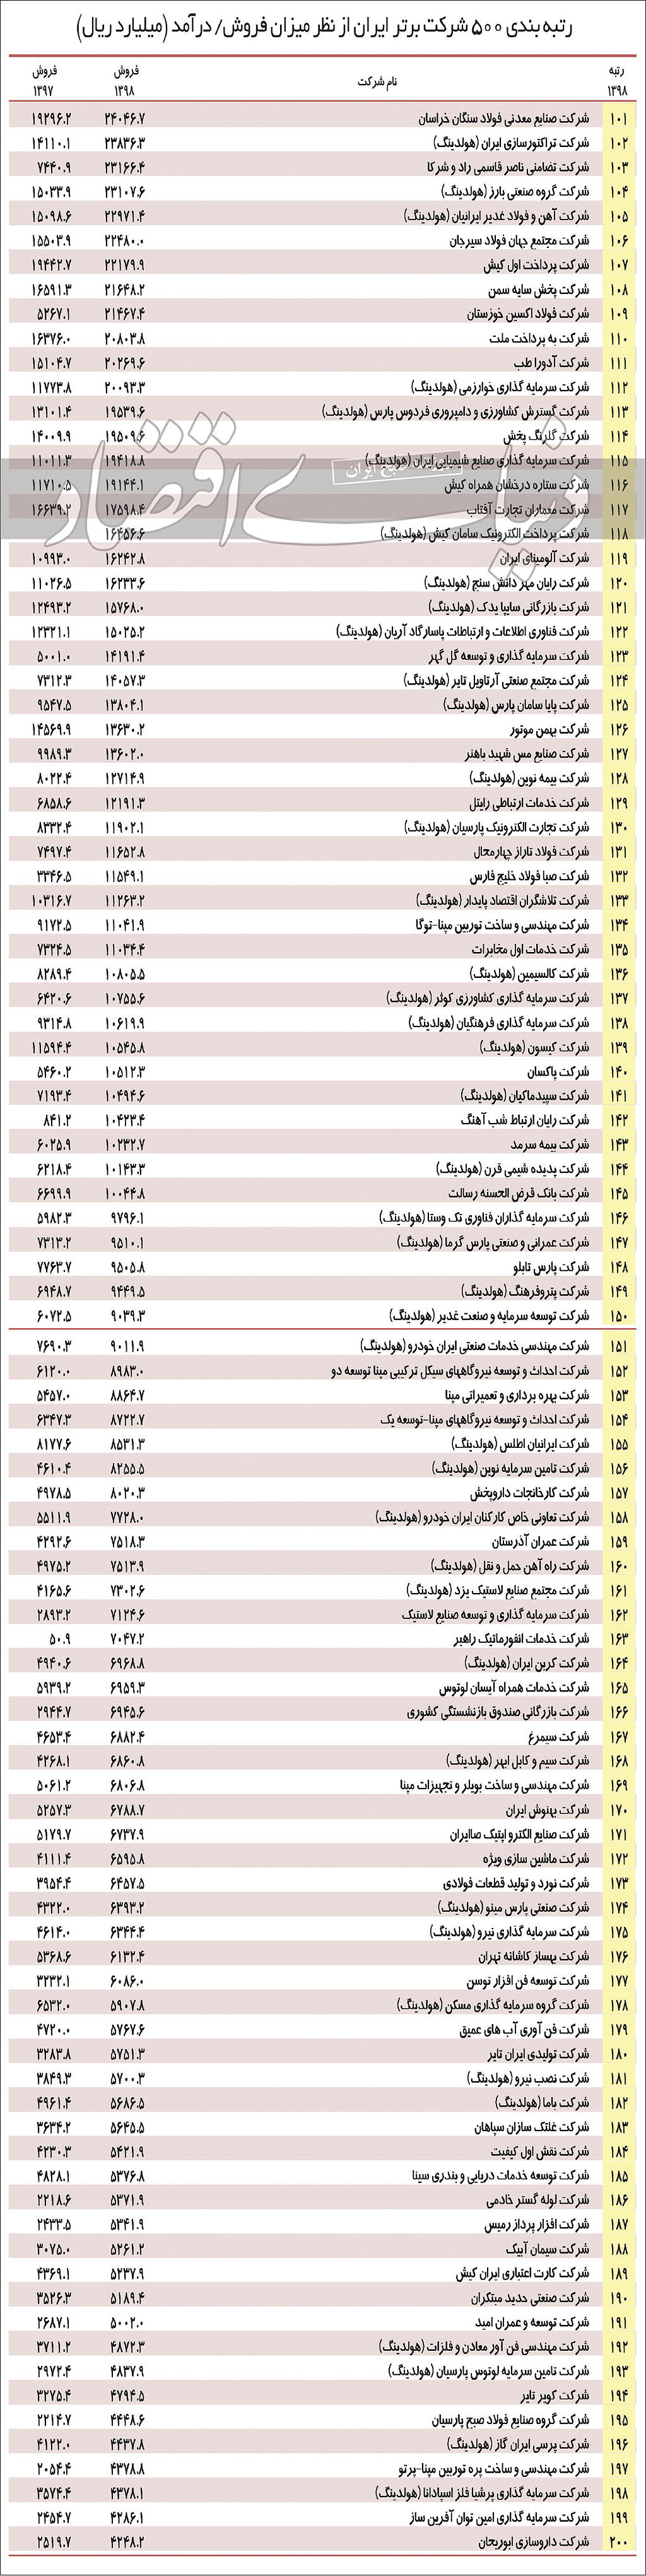 لیست 500 شرکت برتر ایرانی-2